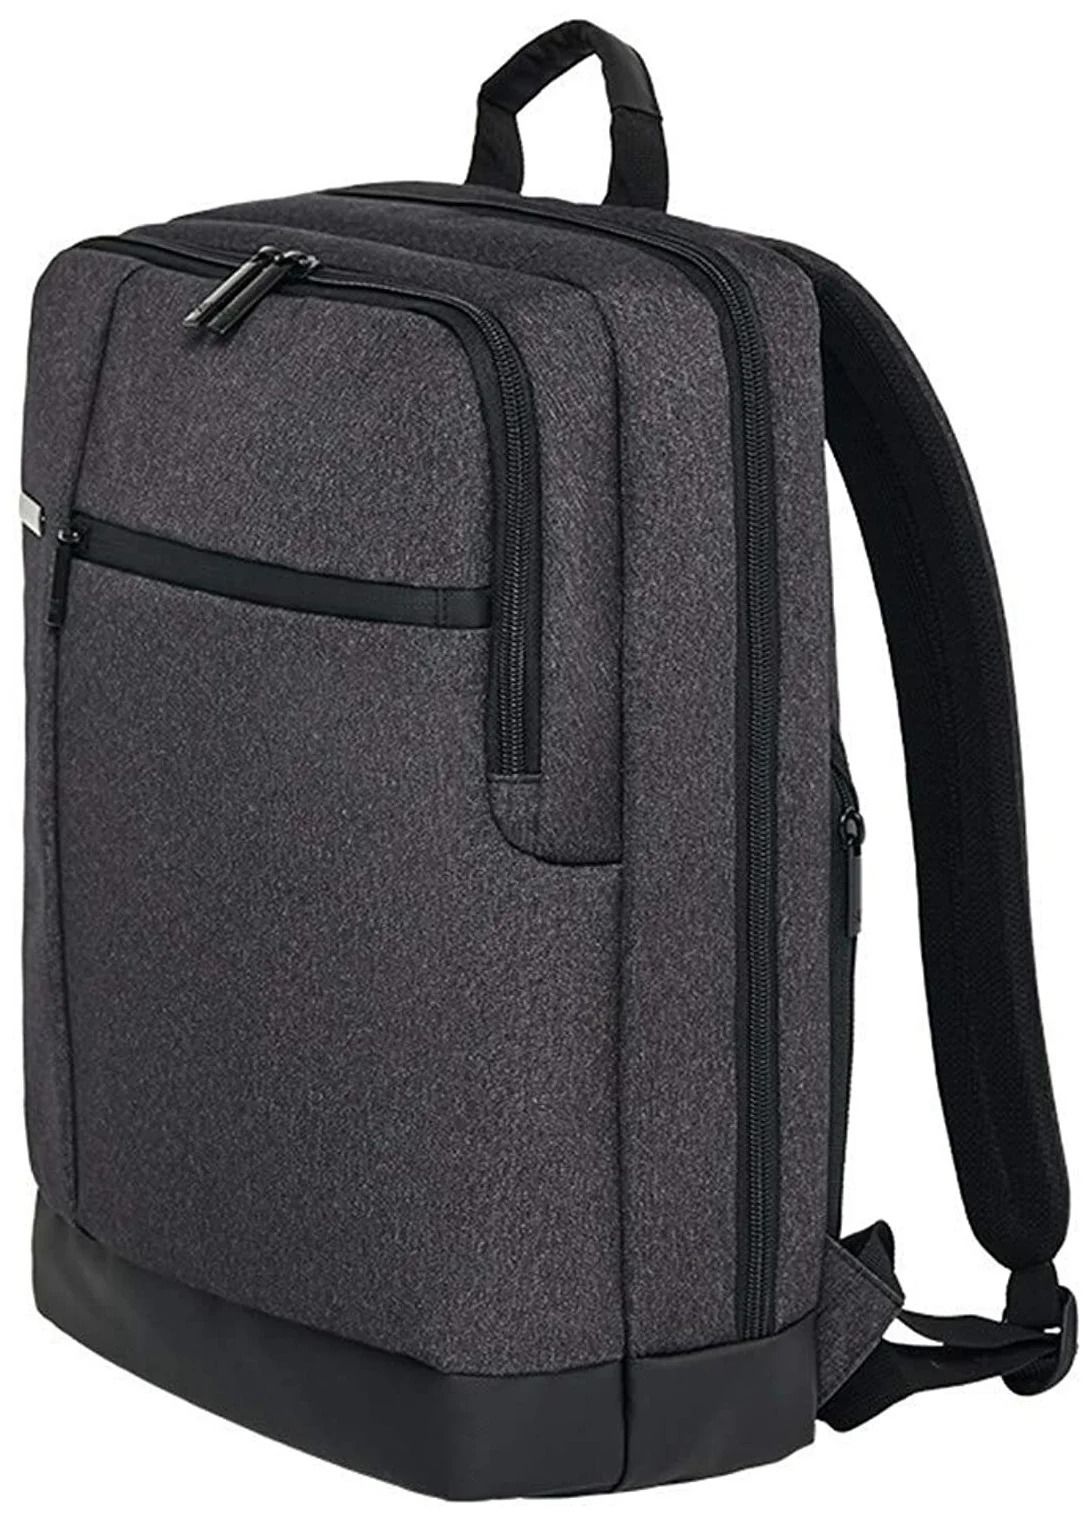 рюкзак runmi 90 points classic business черный темно серый Рюкзак Xiaomi 90 Points Classic Business Backpack Dark Grey